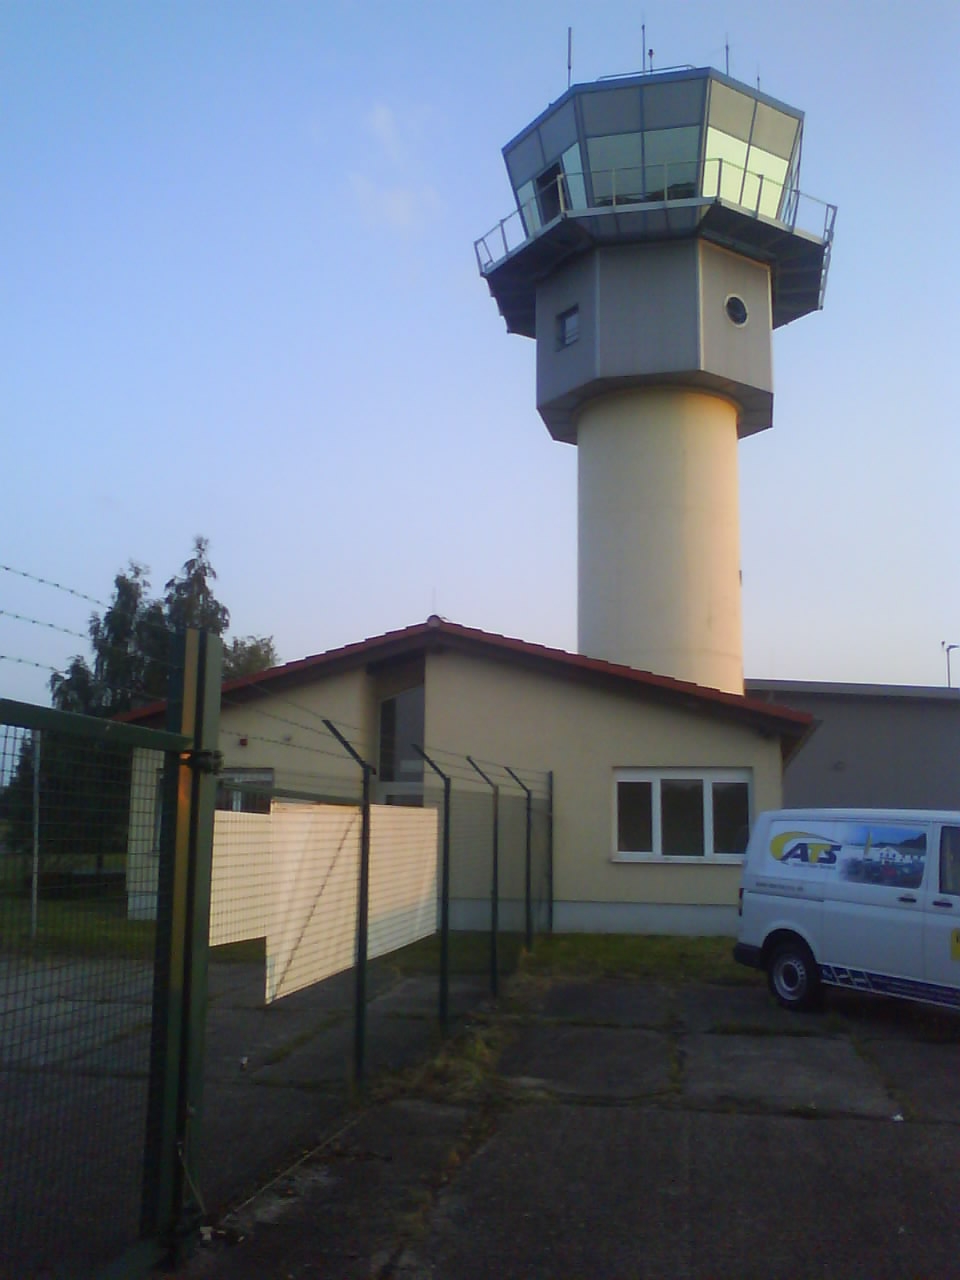 Nochmal  Tower und Haus mit Aufenthalts-und Ruheraum für Allgem. Luftfahrt-Piloten